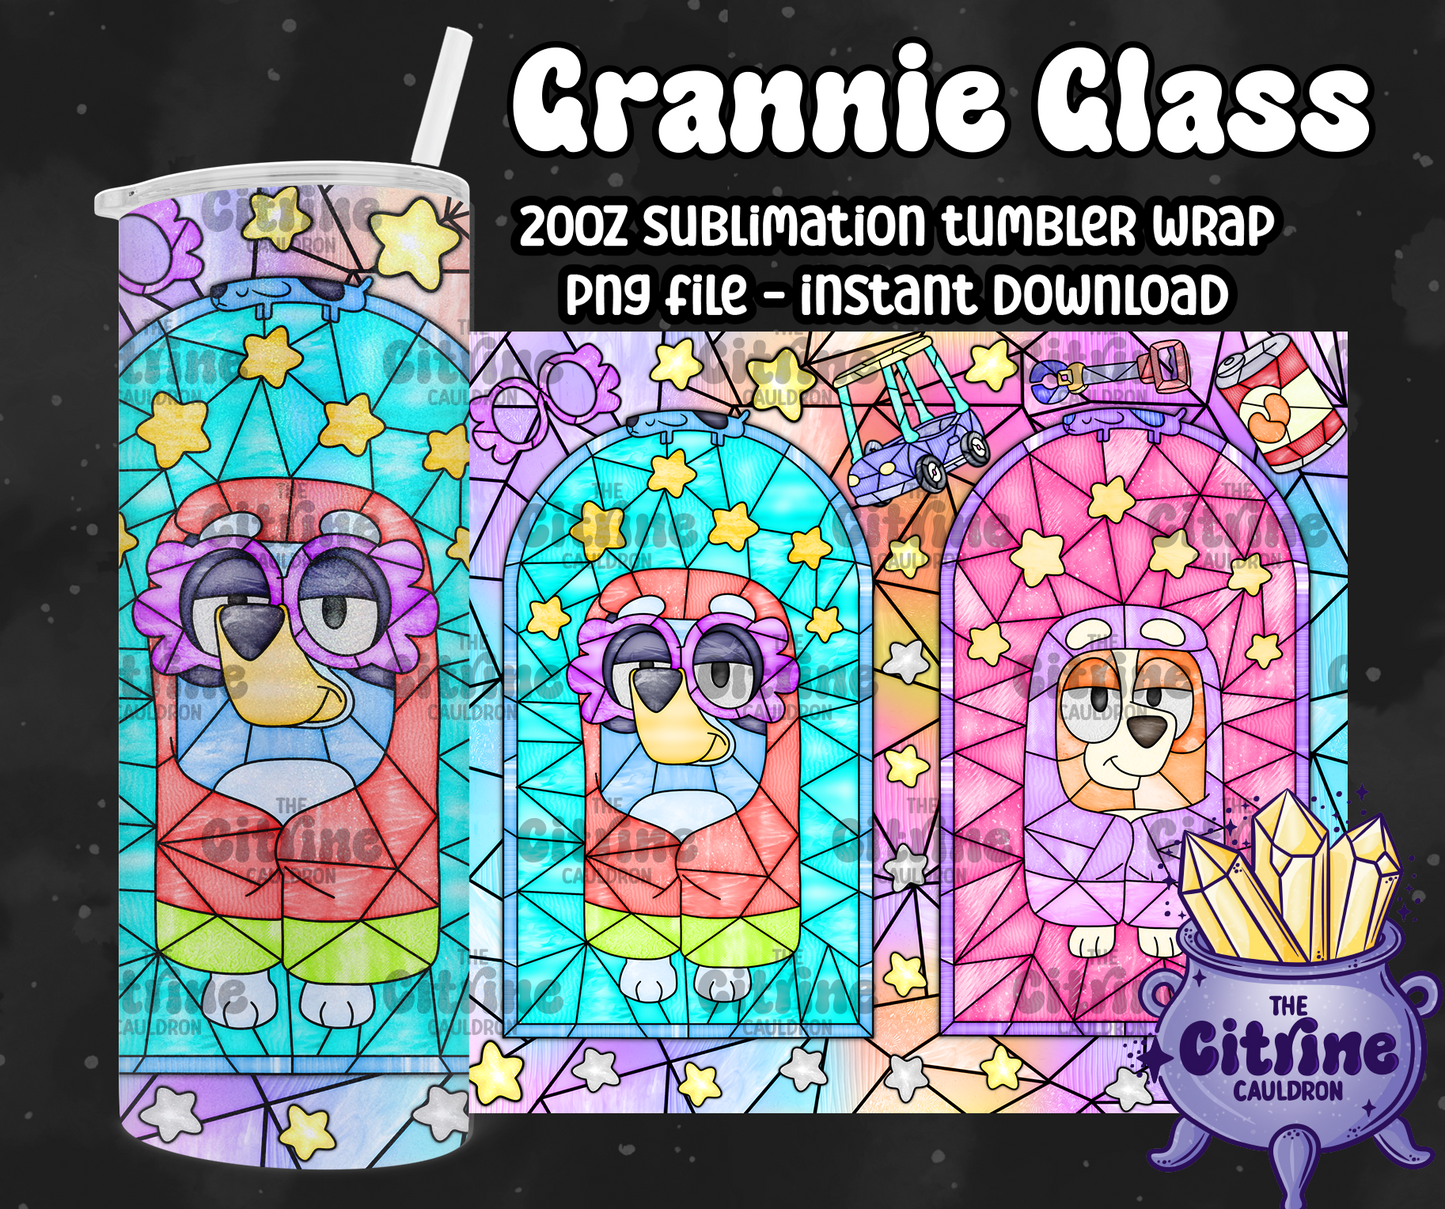 Grannie Glass - PNG Wrap for Sublimation 20oz Tumbler